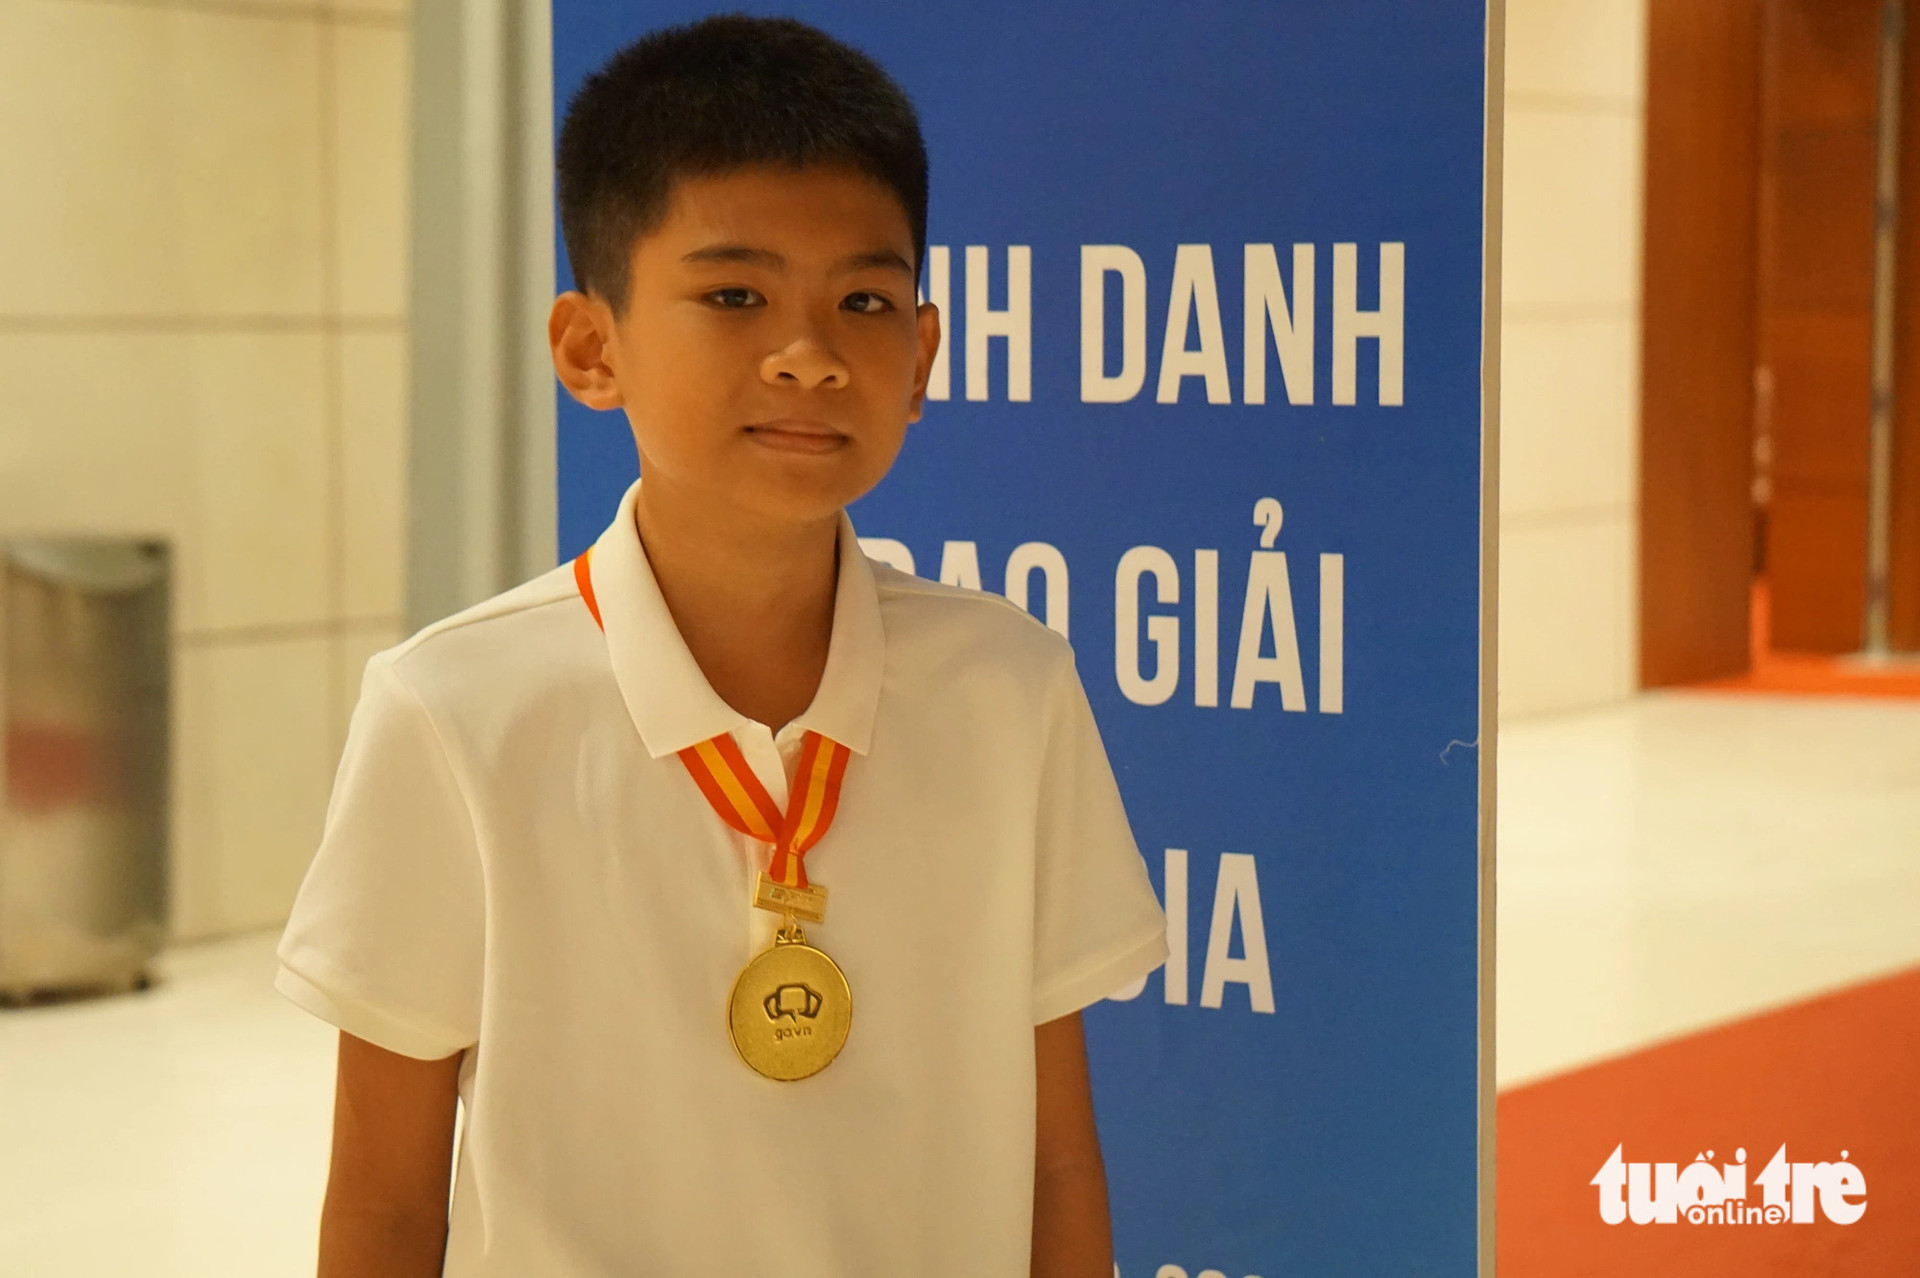 Nguyễn Bình giành giải nhì cấp quốc gia Cuộc thi Olympic tiếng Anh trên Internet khối 5 - Ảnh: T.ĐIỂU